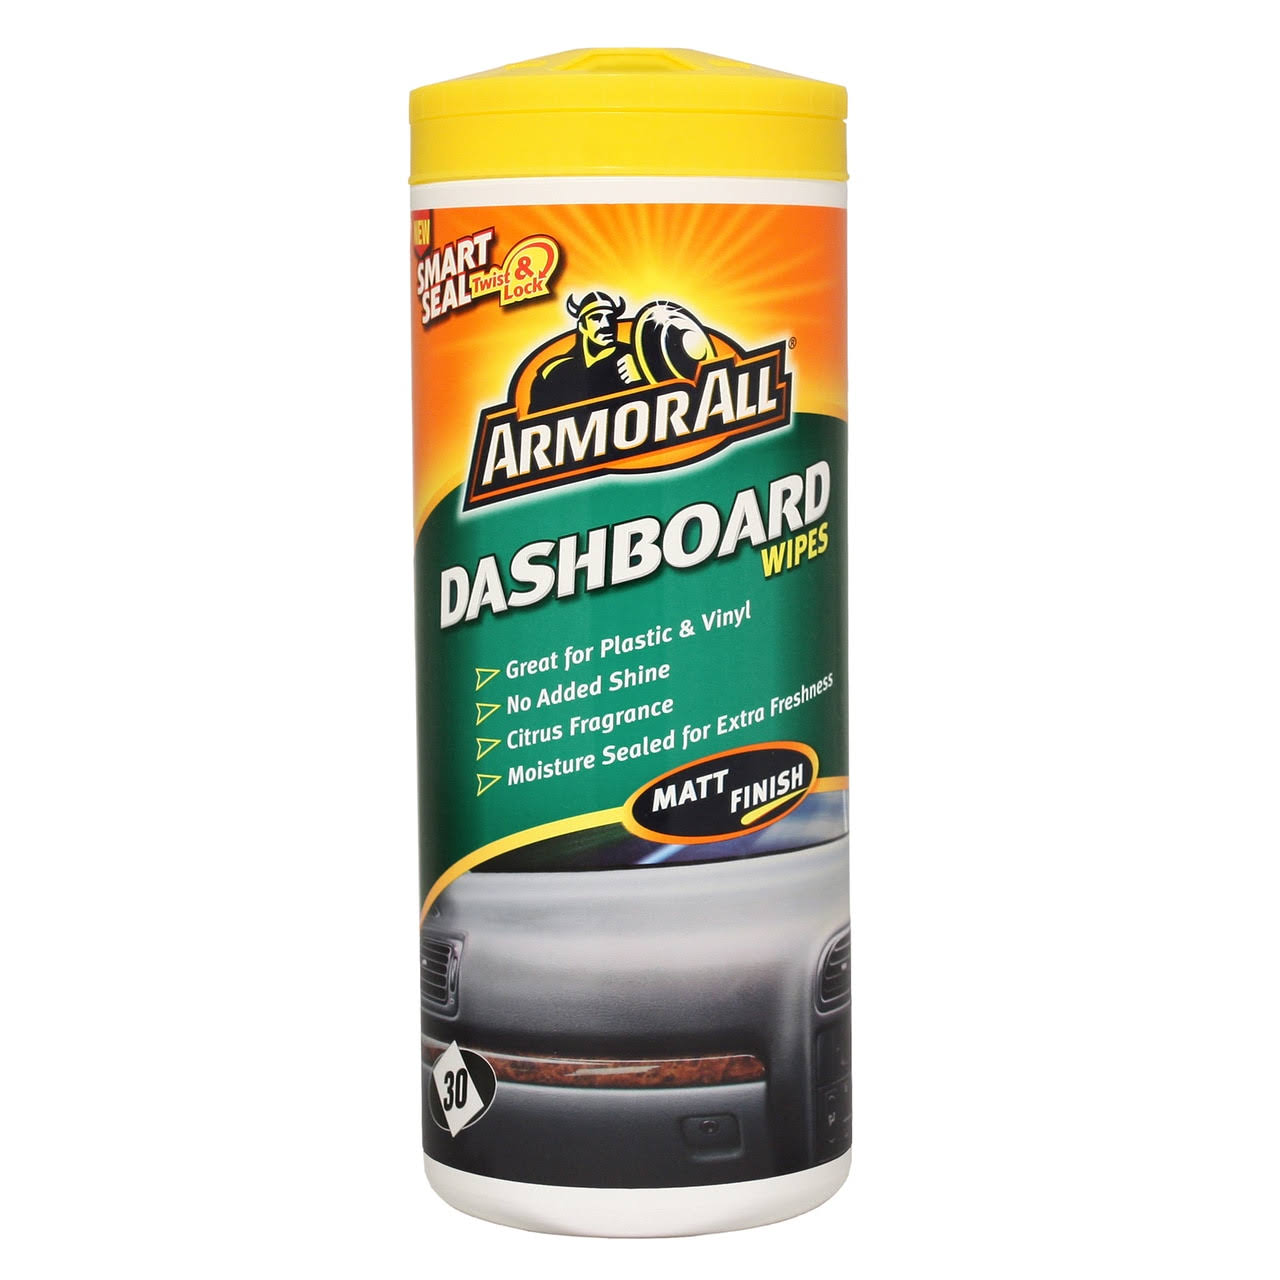 Armorall Dashboard Wipes - Matt Finish